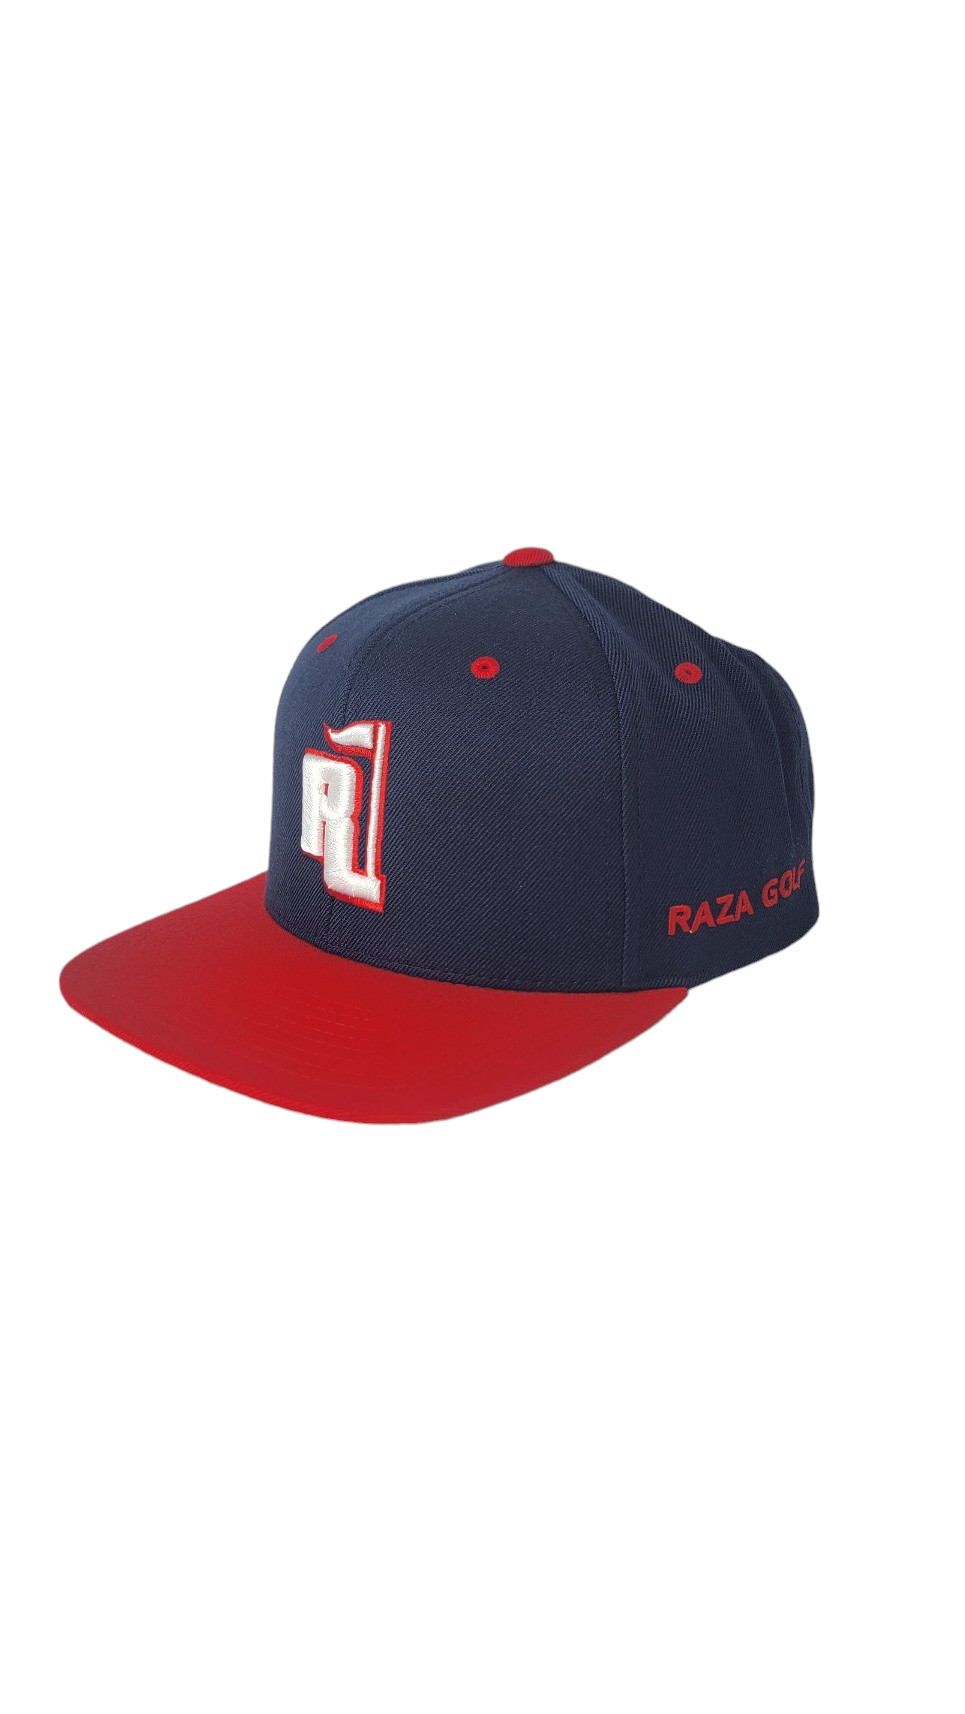 Raza Golf Navy/Red Snapback Hat